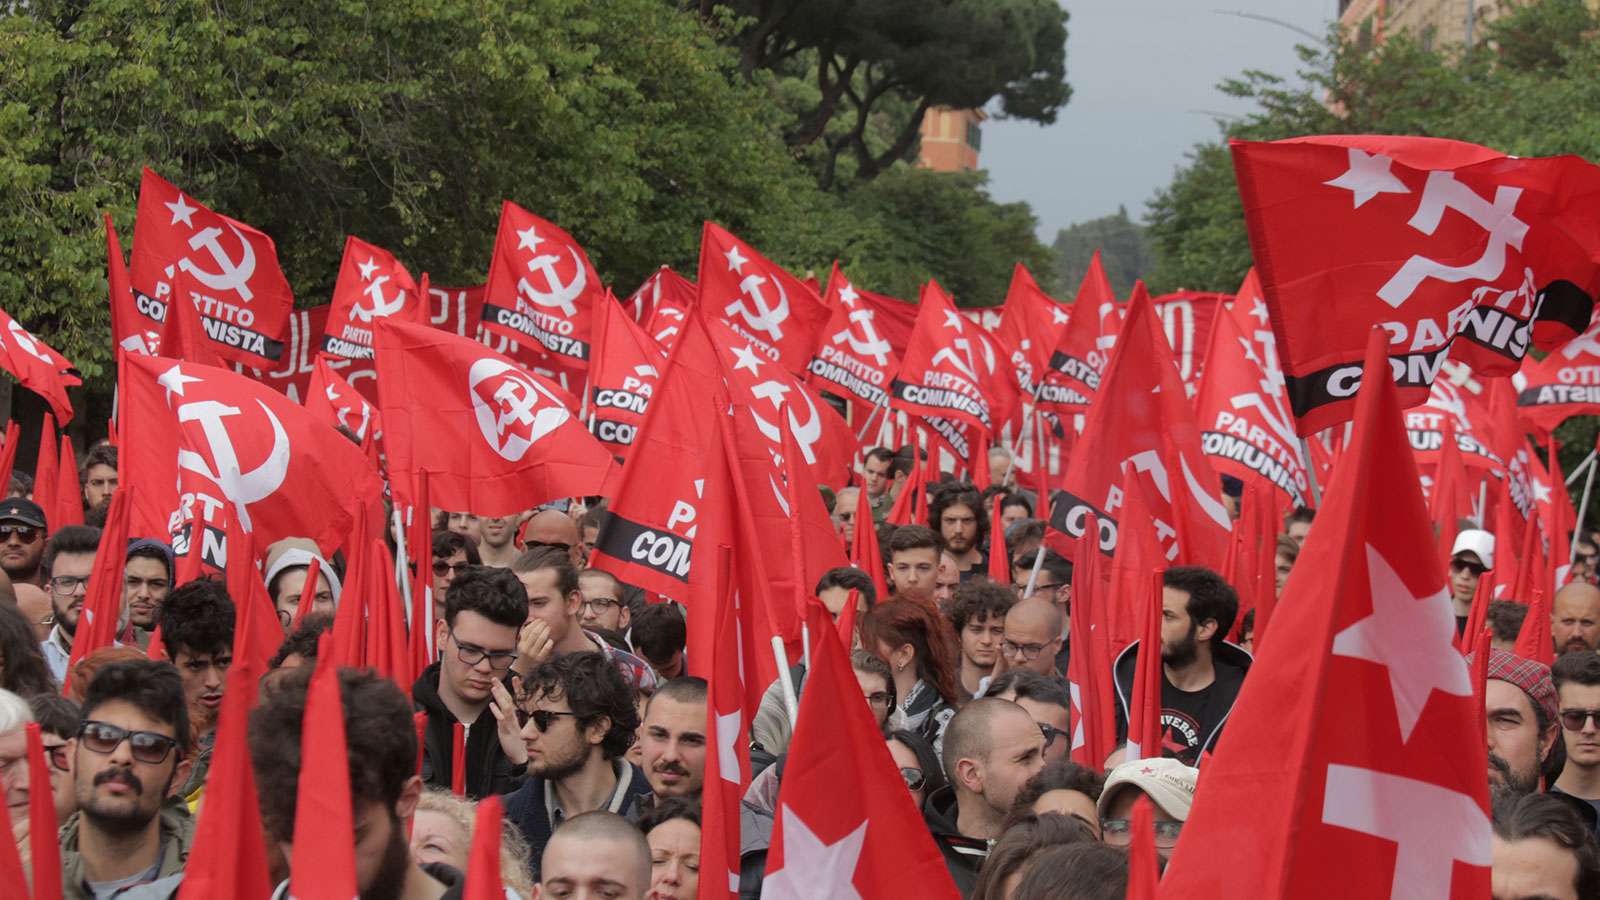 Национальная рабочая партия. Коммунистическая партия Италии. Коммунистическая партия Хорватии. Флаг Коммунистической партии Италии. Коммунистическая партия Португалии.